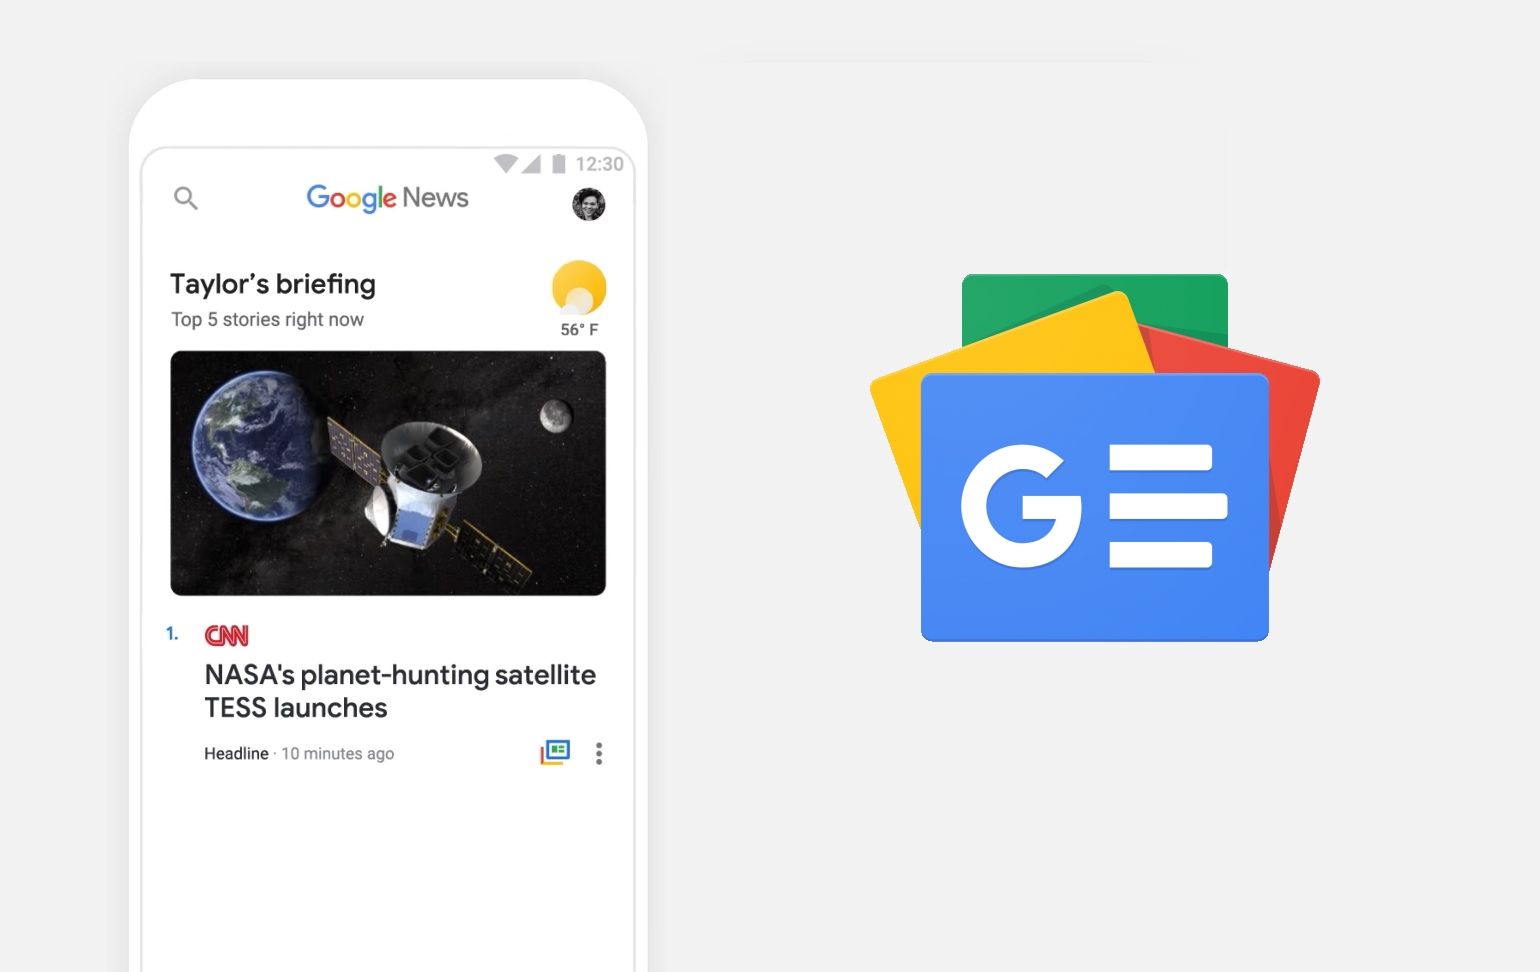 Google ปรับโฉม Google News ใหม่ ใช้ AI ช่วยจัดข่าวหรือเรื่องราวที่เราสนใจให้อัตโนมัติ